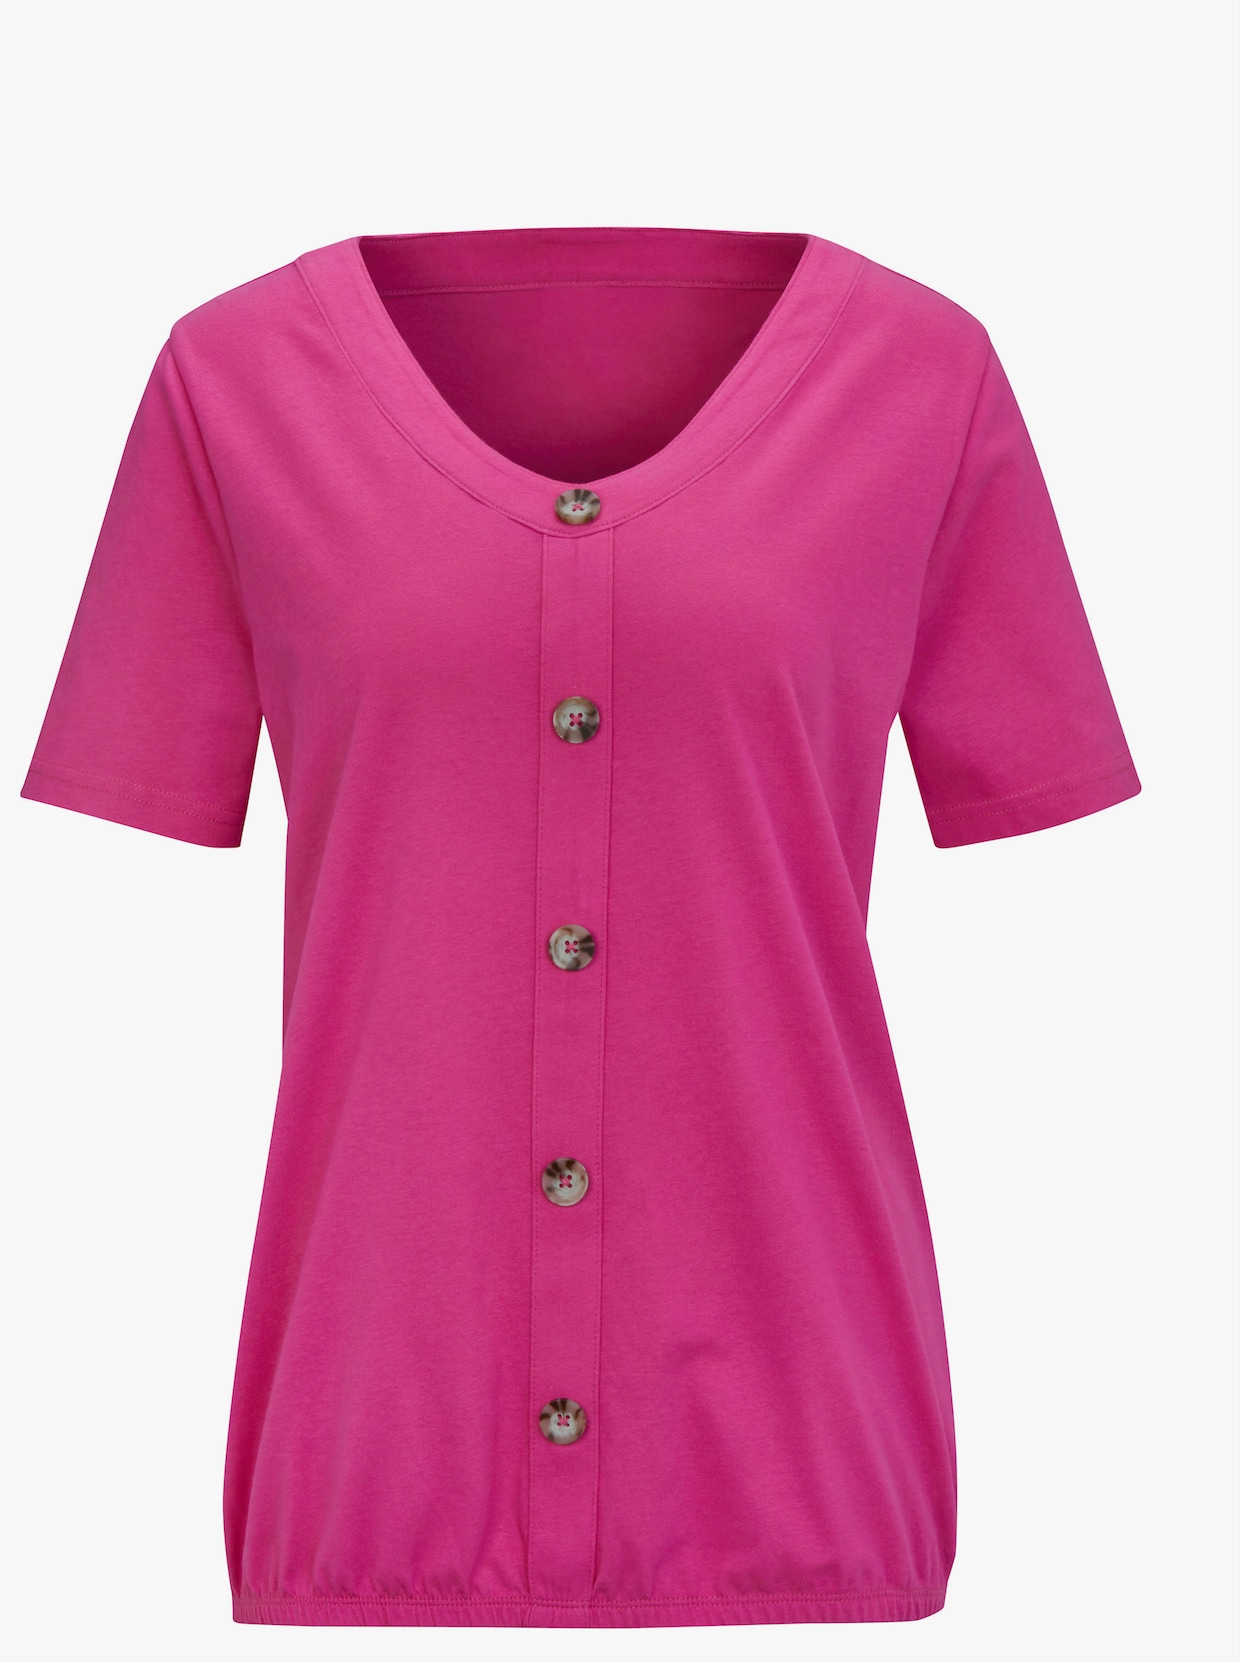 Tričko s krátkým rukávem - pink